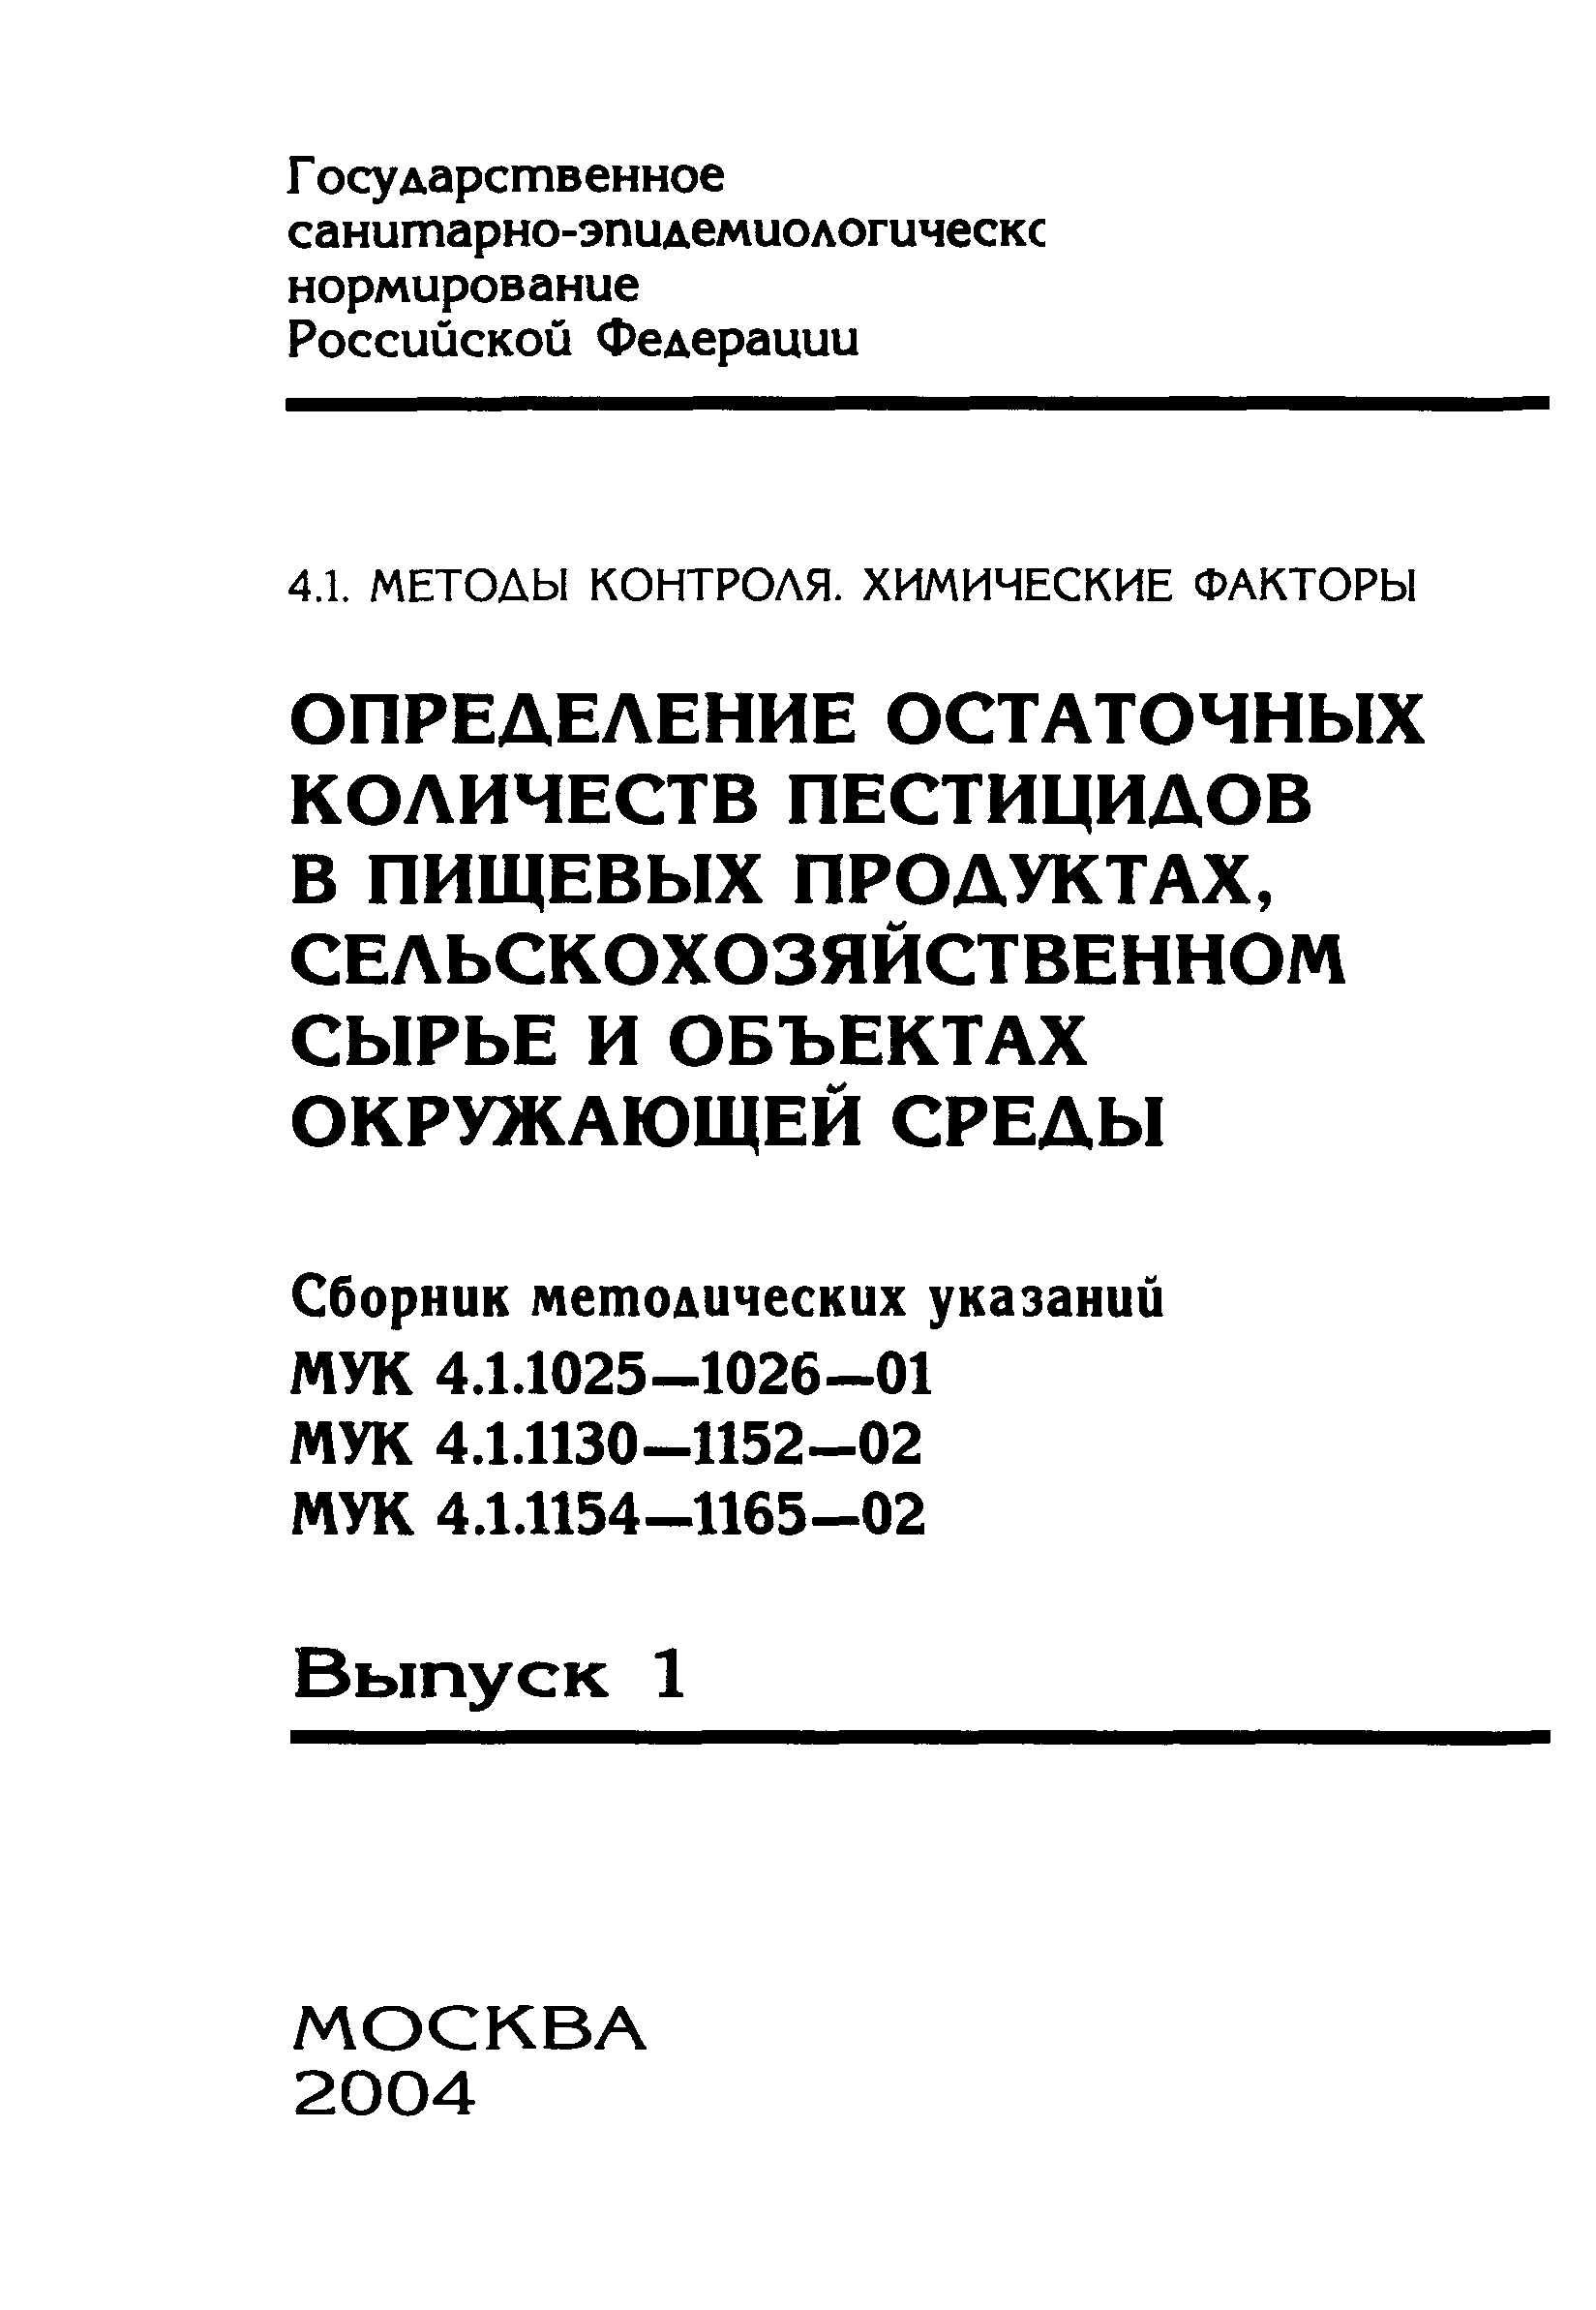 МУК 4.1.1151-02